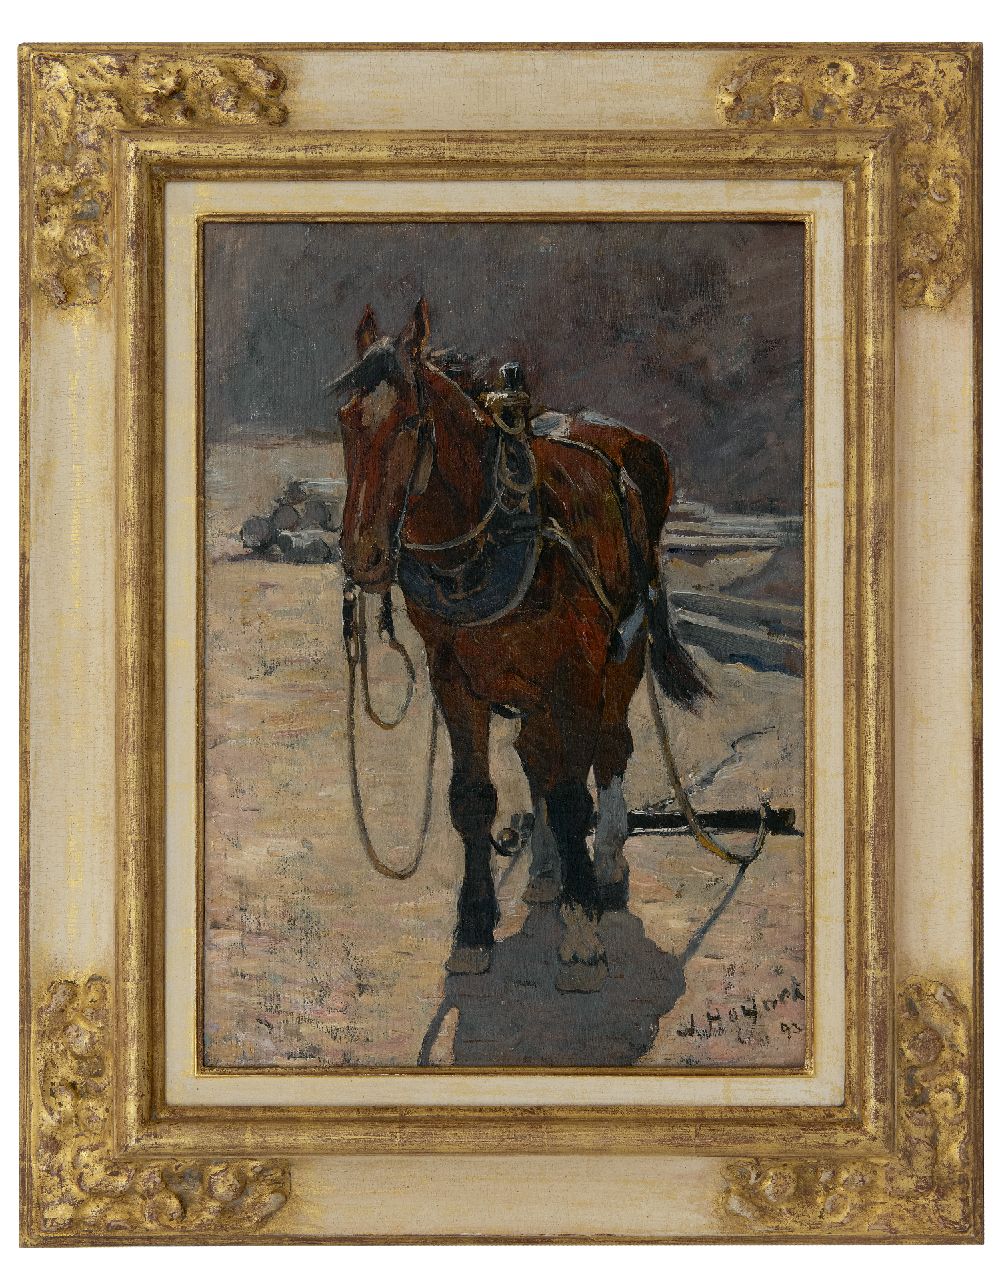 Hoynck van Papendrecht J.  | Jan Hoynck van Papendrecht | Schilderijen te koop aangeboden | Trekpaard, olieverf op doek 45,1 x 34,0 cm, gesigneerd rechtsonder en gedateerd '93